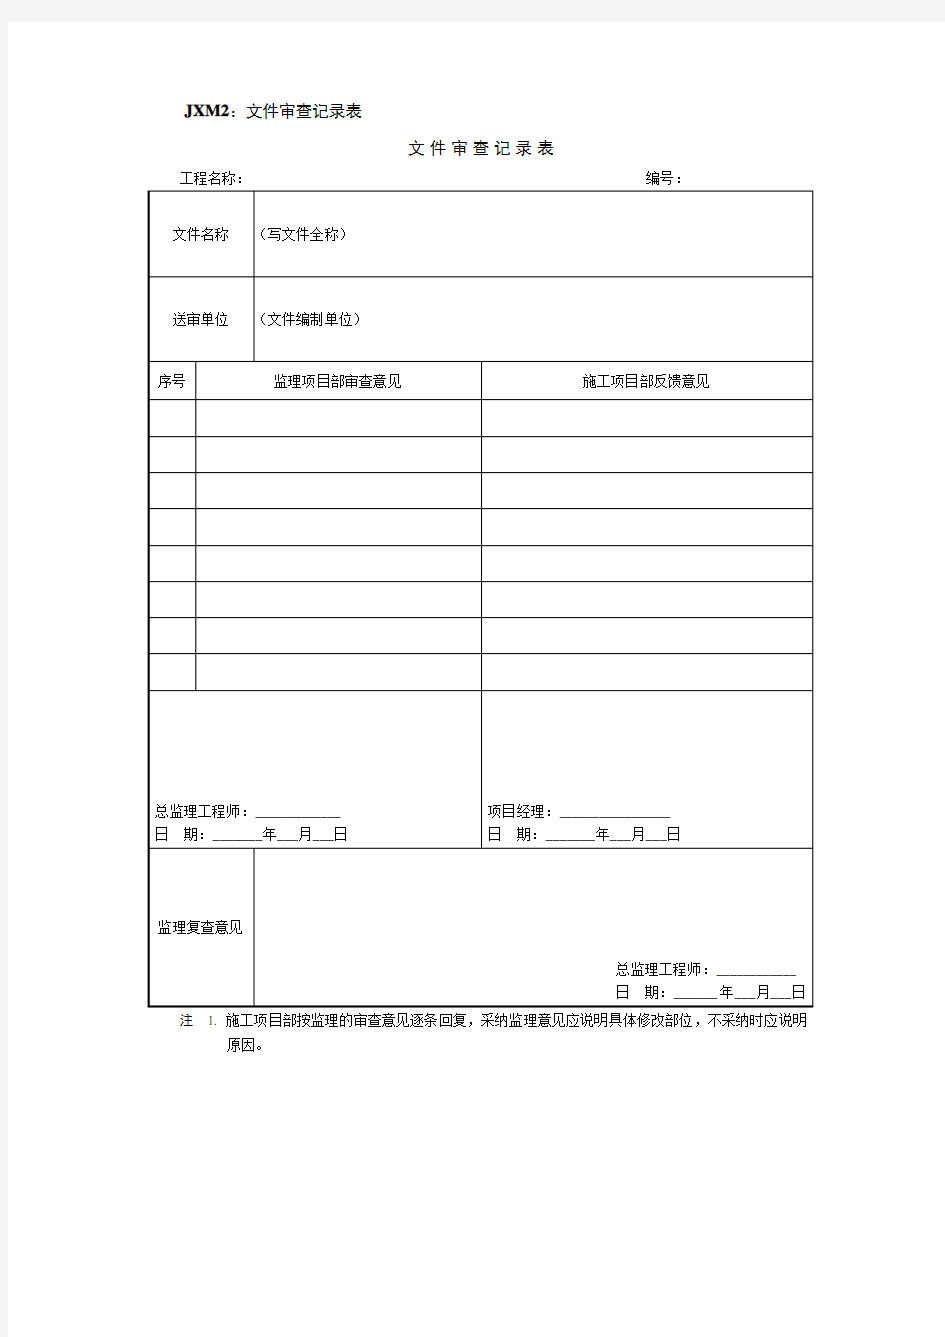 (完整版)标准化管理模板文件审查记录表